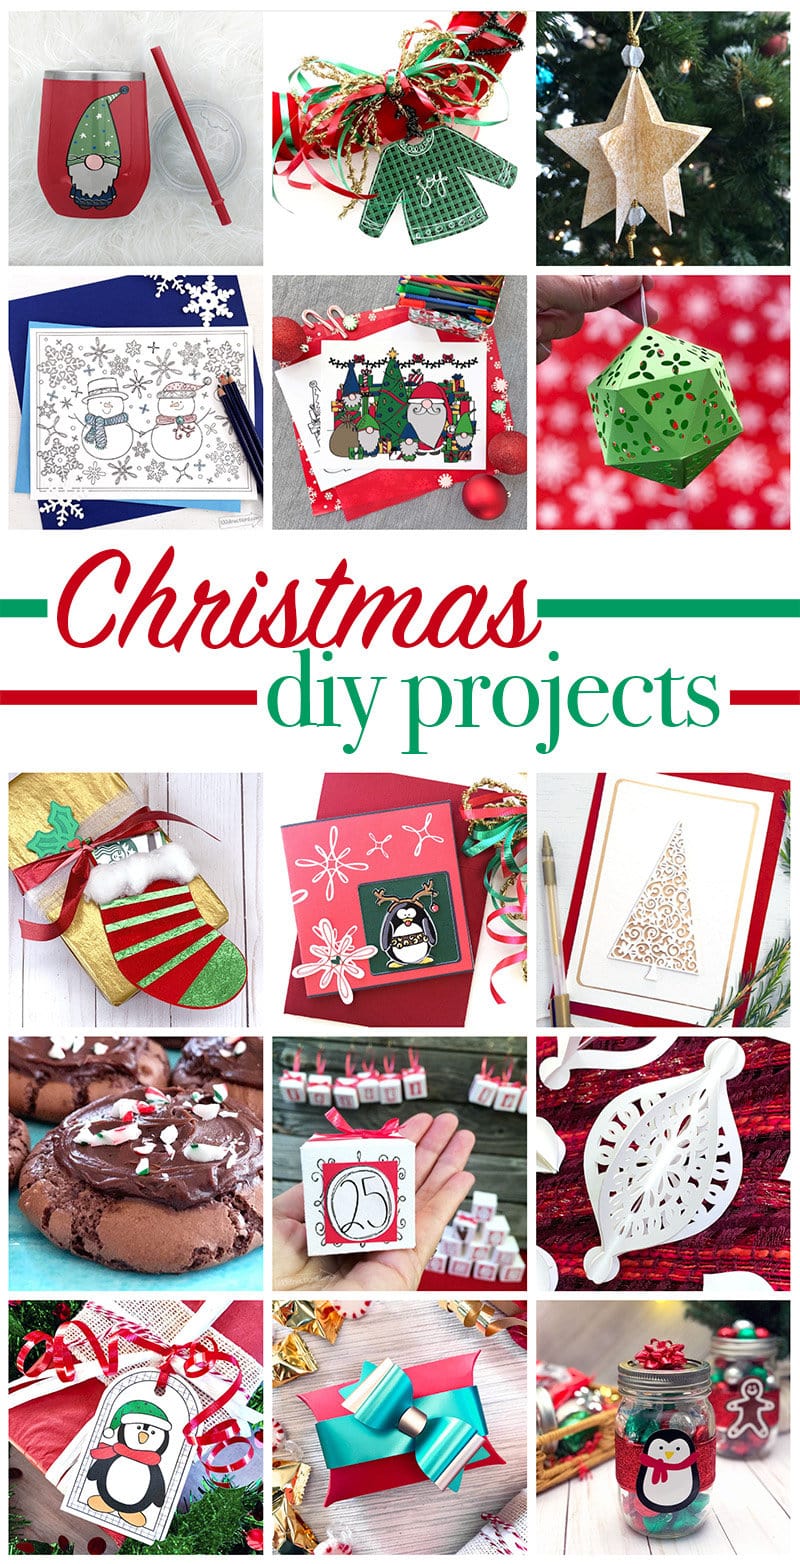 Christmas diy project ideas